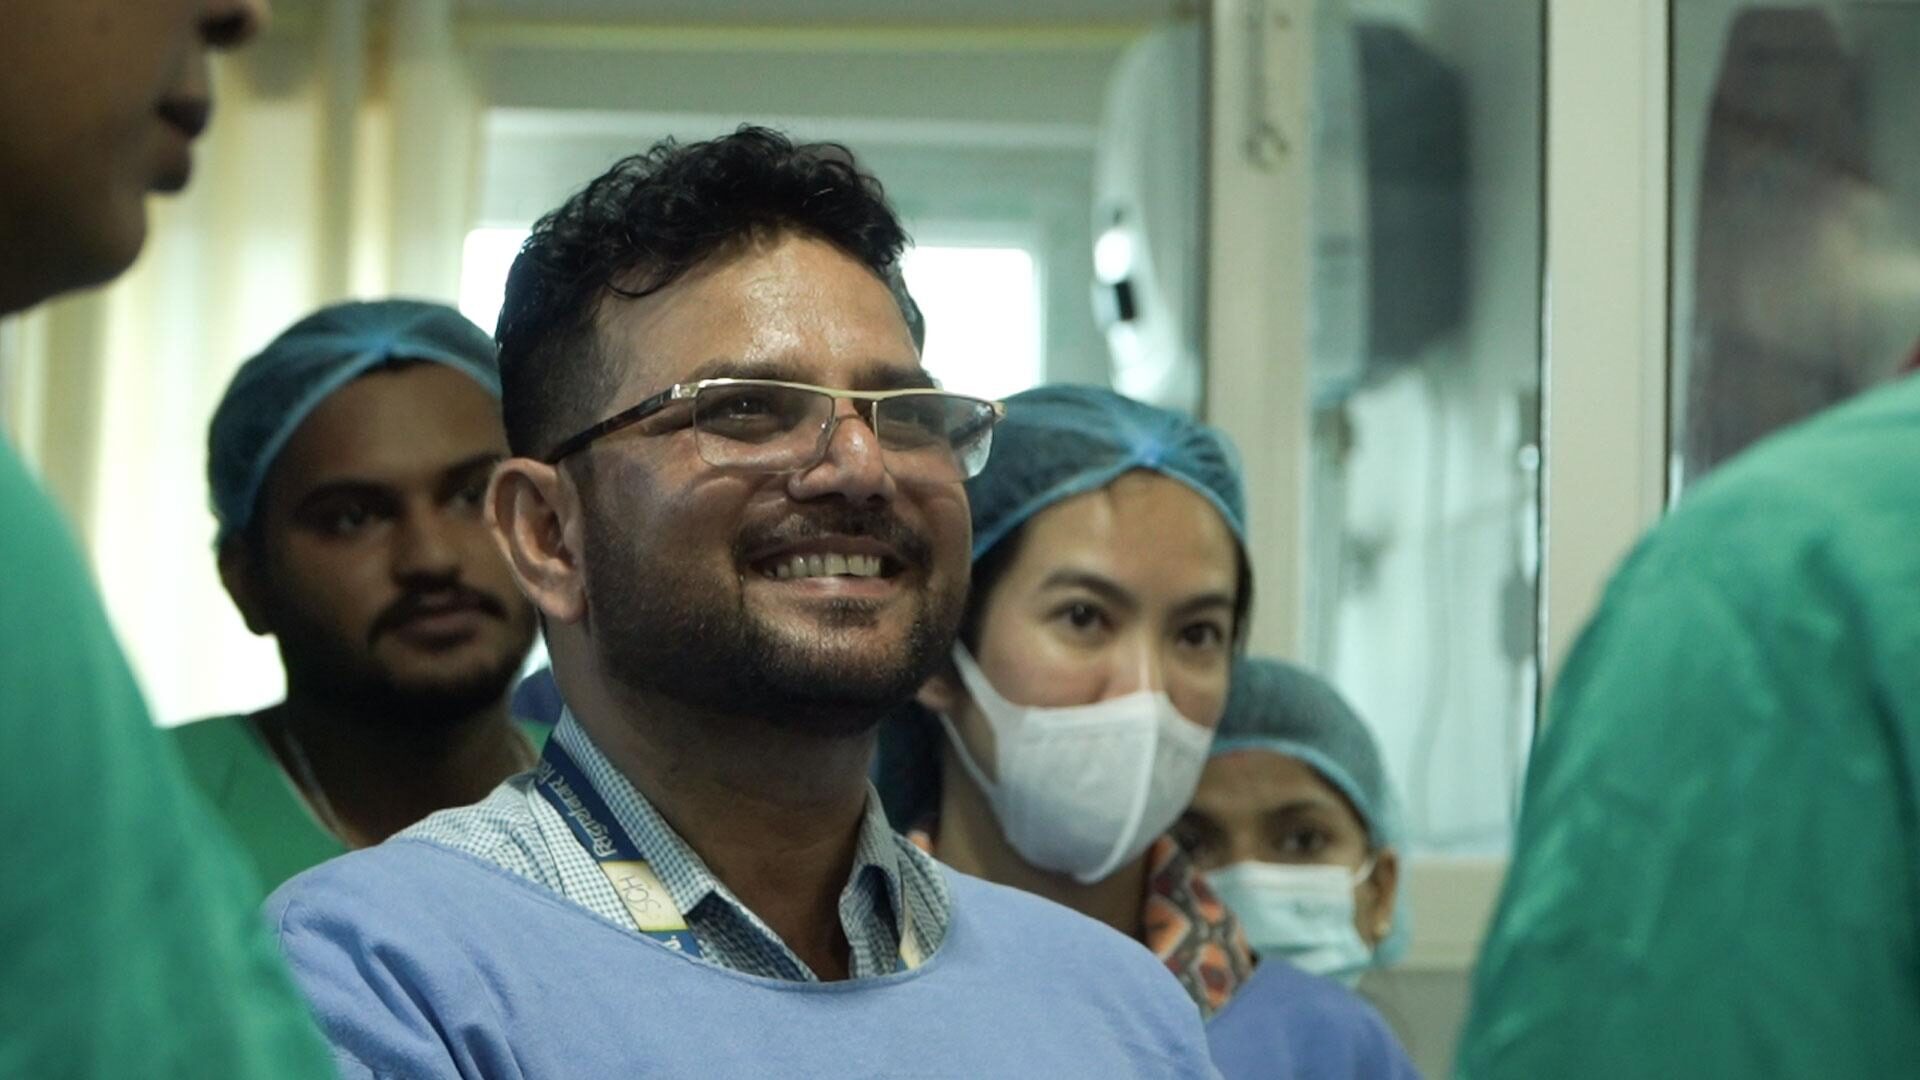 รอยยิ้มของทีมแพทย์ชาวเนปาลที่เข้าร่วมเป็นส่วนหนึ่งในการช่วยเหลือประชาชน